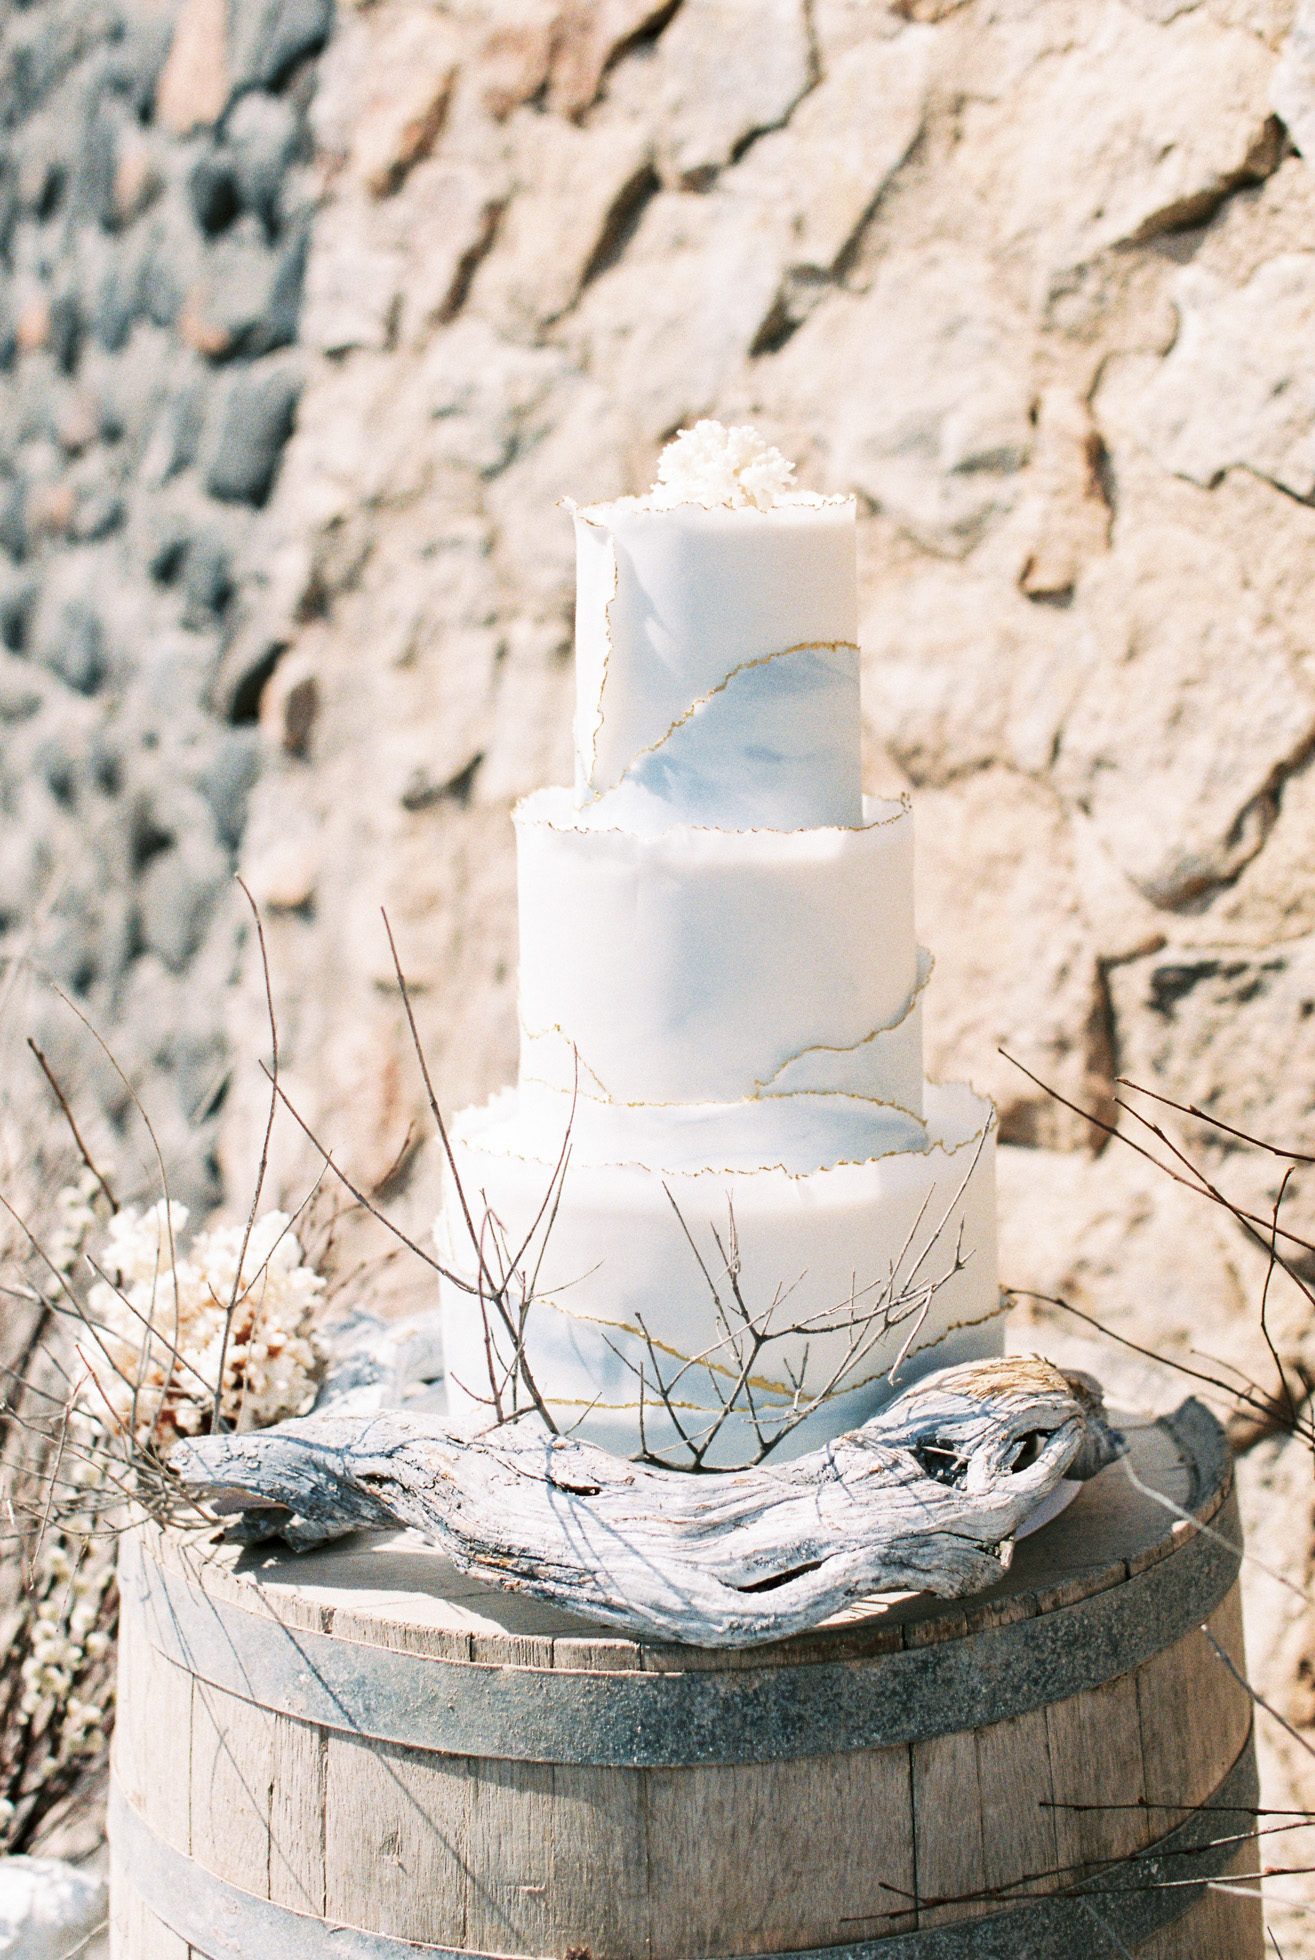 Unique white coral wedding cake inspiration in Santorini Greece.